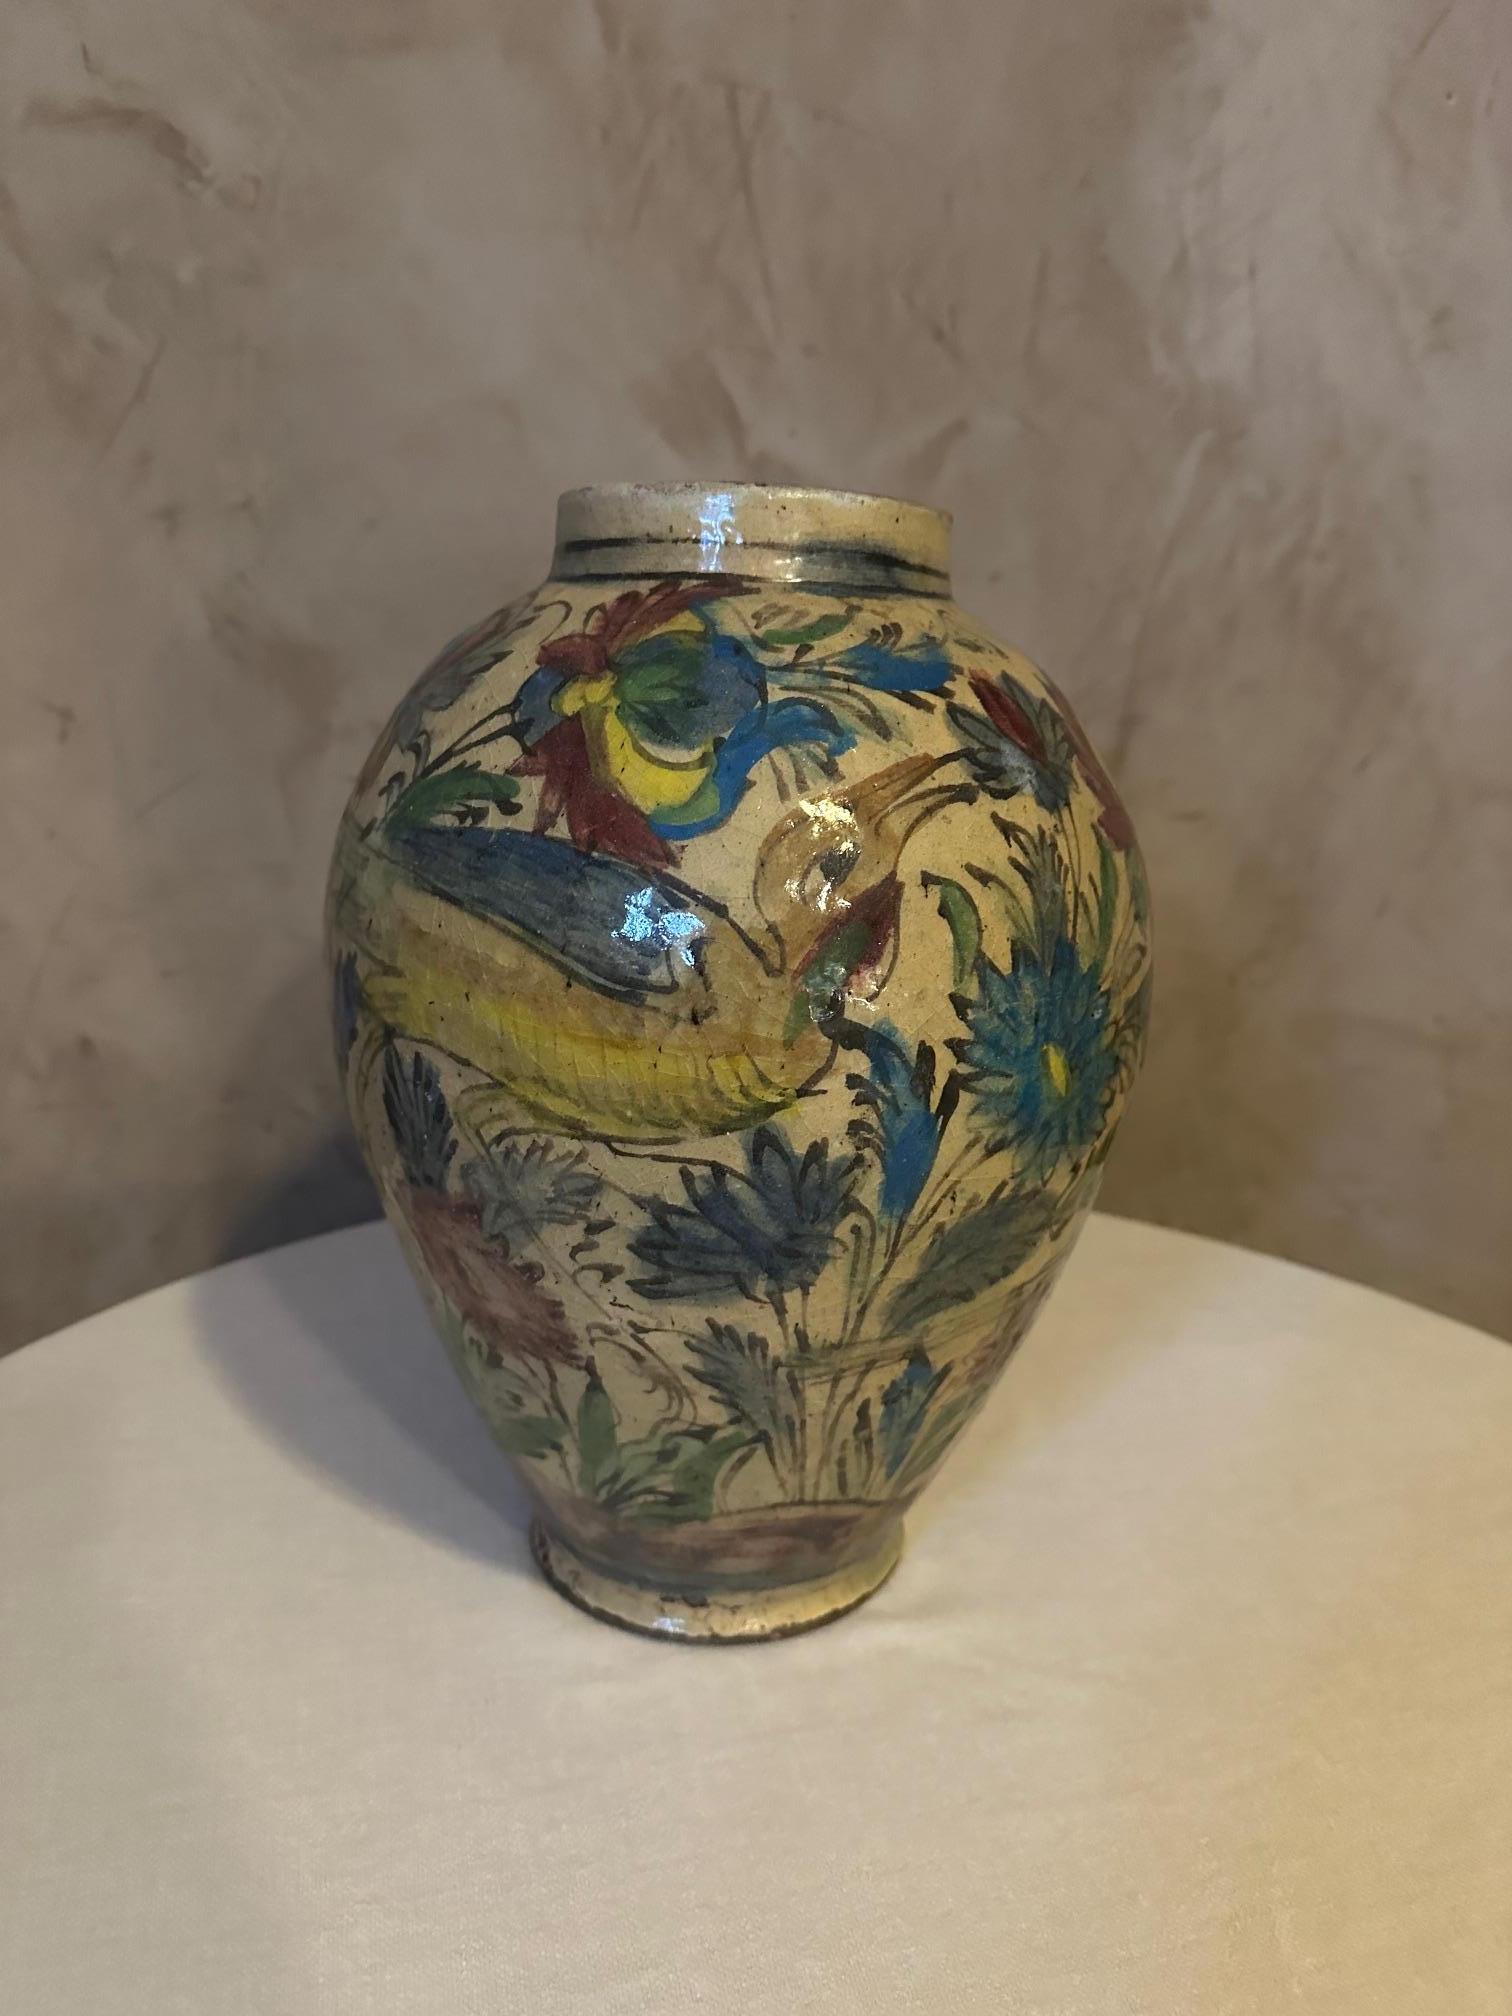 Très beau vase en céramique émaillée et peinte en polychrome. 
Perse, dynastie Qajar datant de 1900. 
Belle décoration peinte d'oiseaux et de branches fleuries. 
Bonne qualité. Petit éclat sous le pied.
